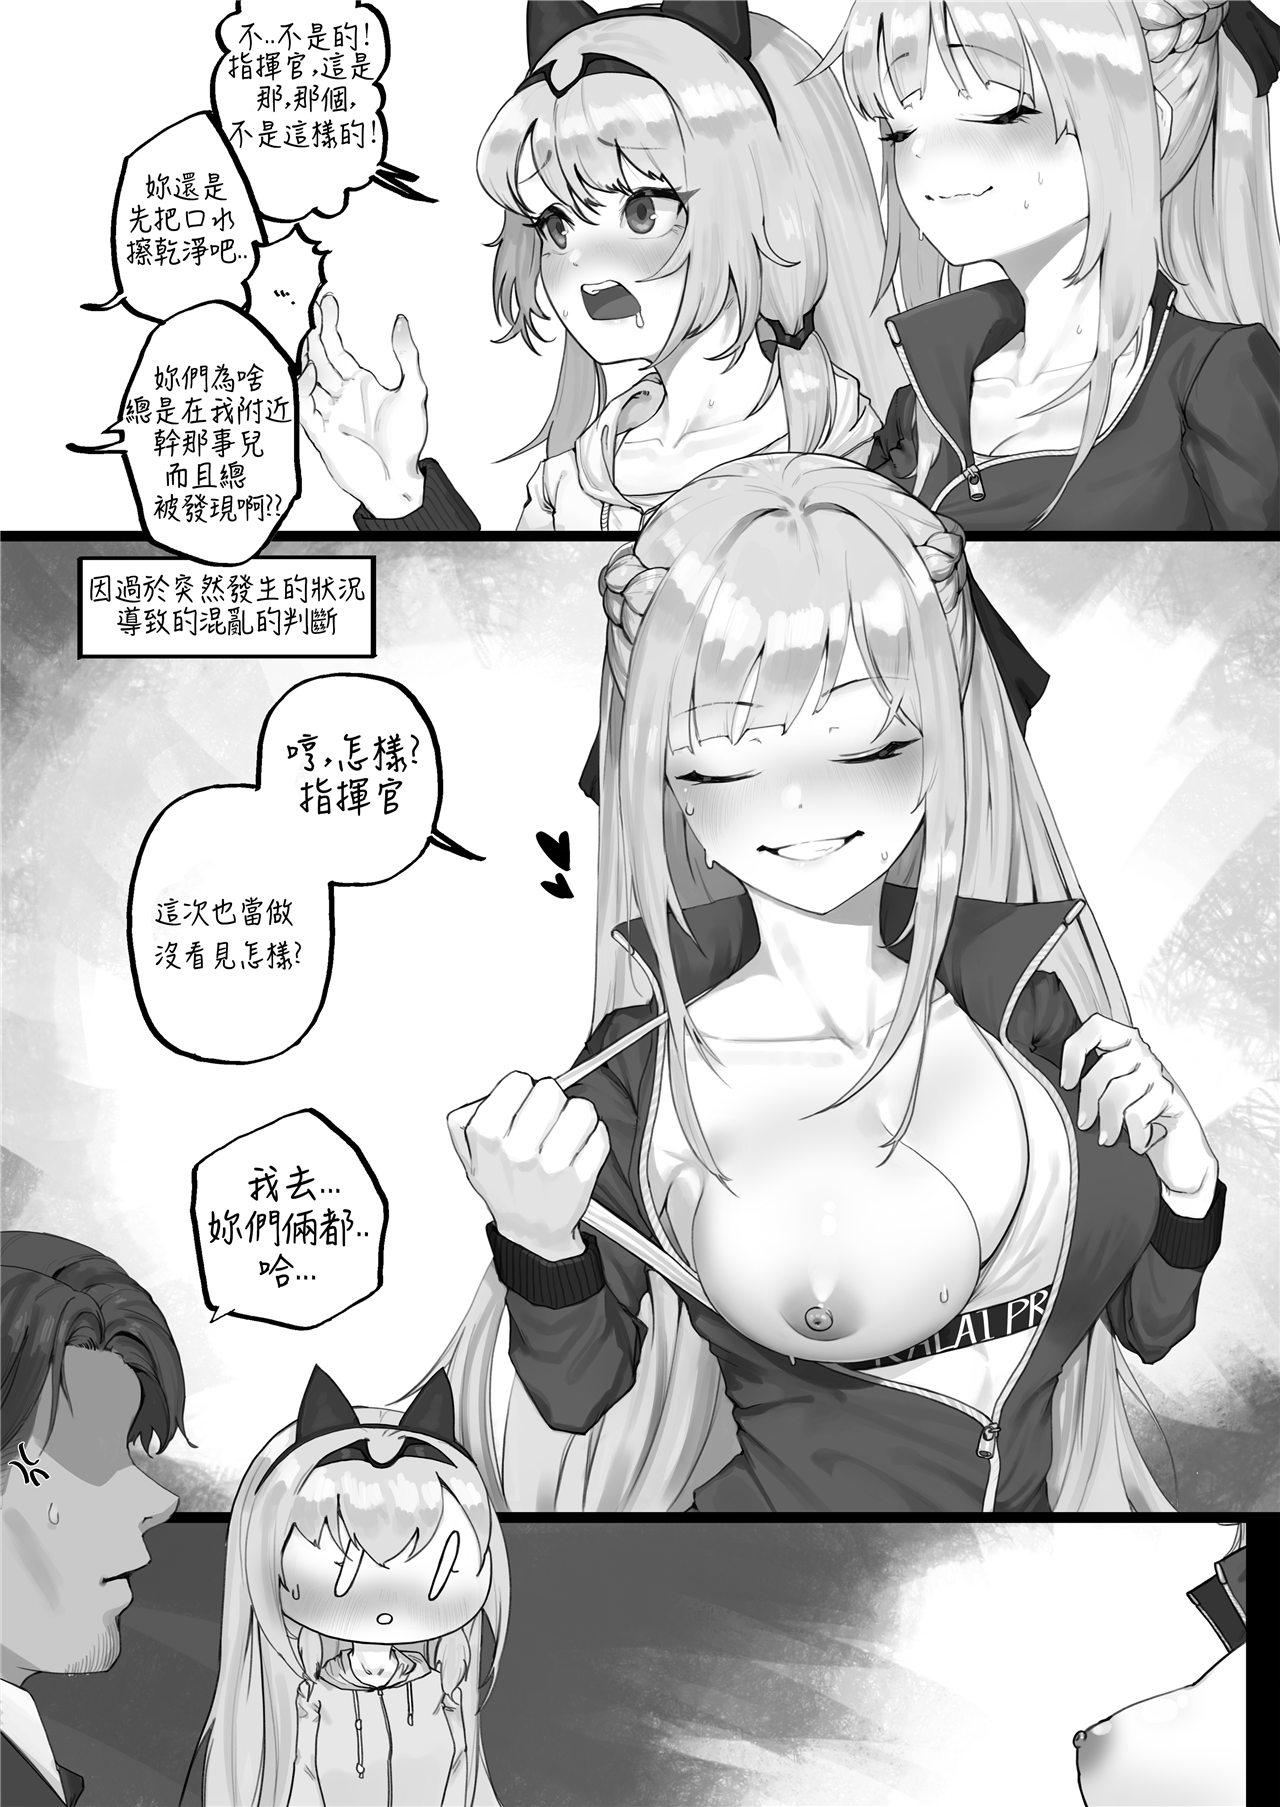 Gay Bukkakeboys FFM Manga - Girls frontline Shaking - Page 5